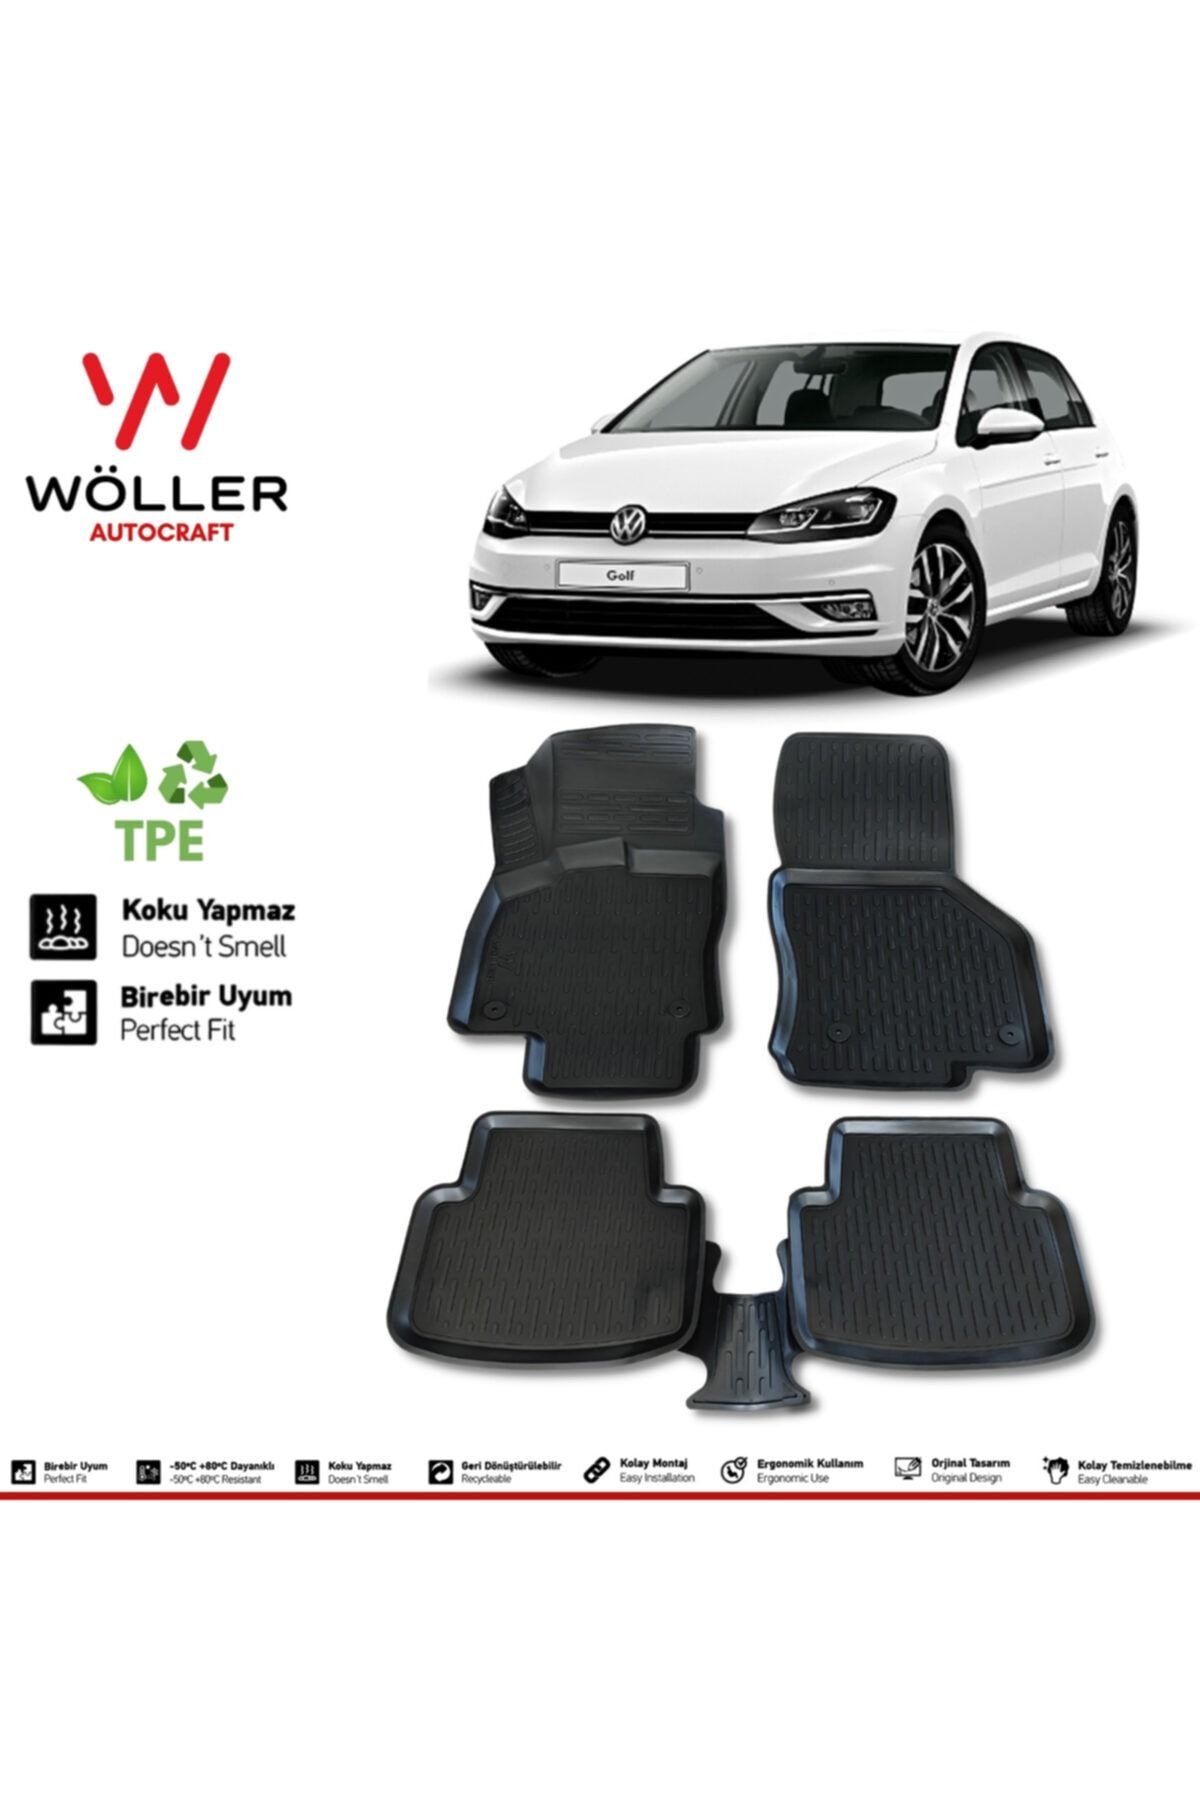 Wöller Volkswagen Golf 7 Paspas 2012 2020 Arası Uyumlu 3d Havuzlu Paspas